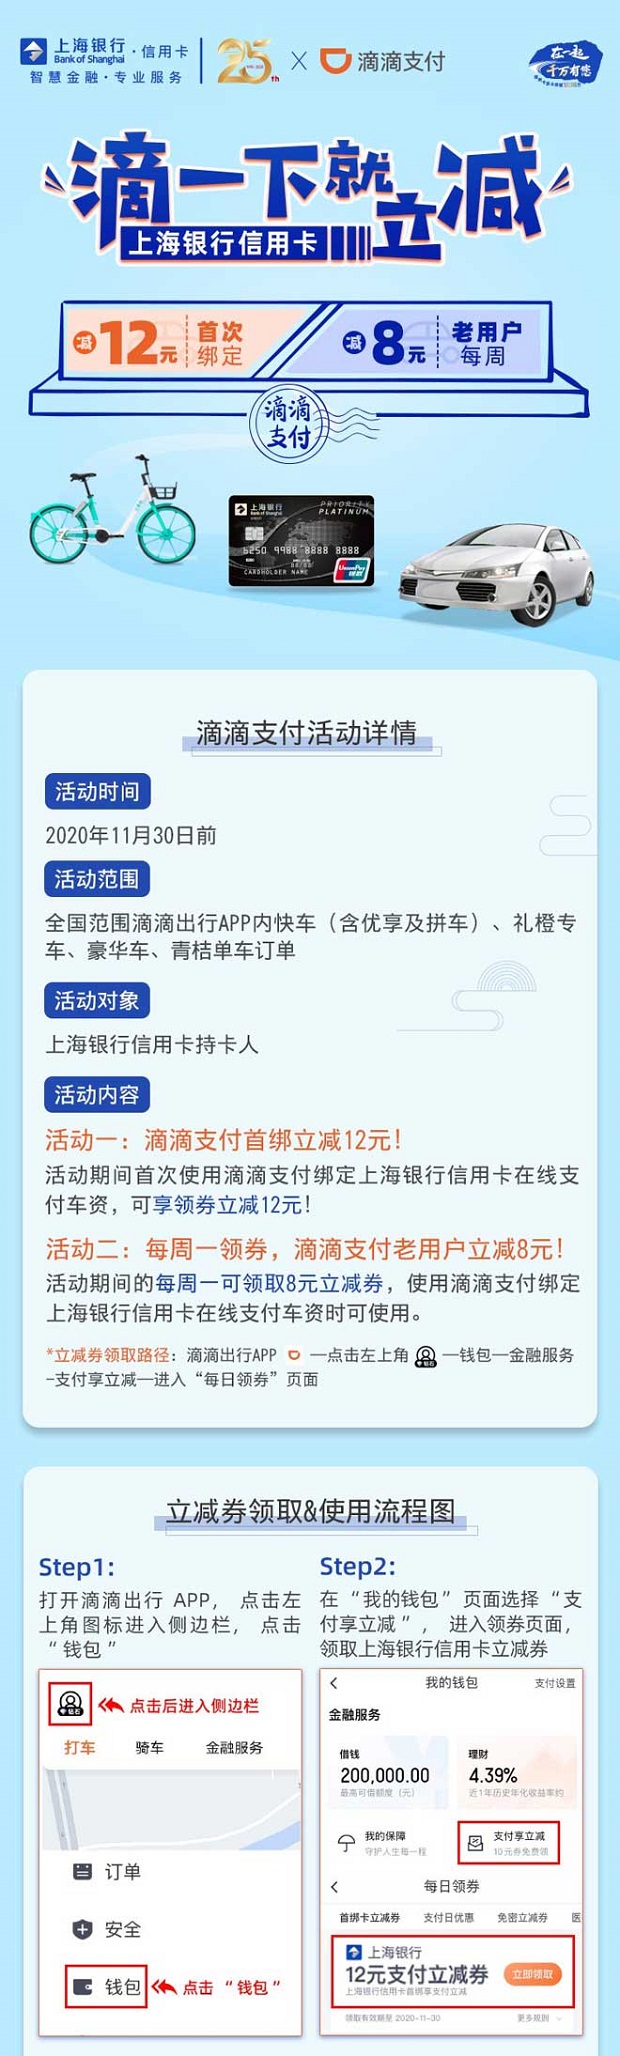 上海银行信用卡滴滴支付首绑减12元优惠